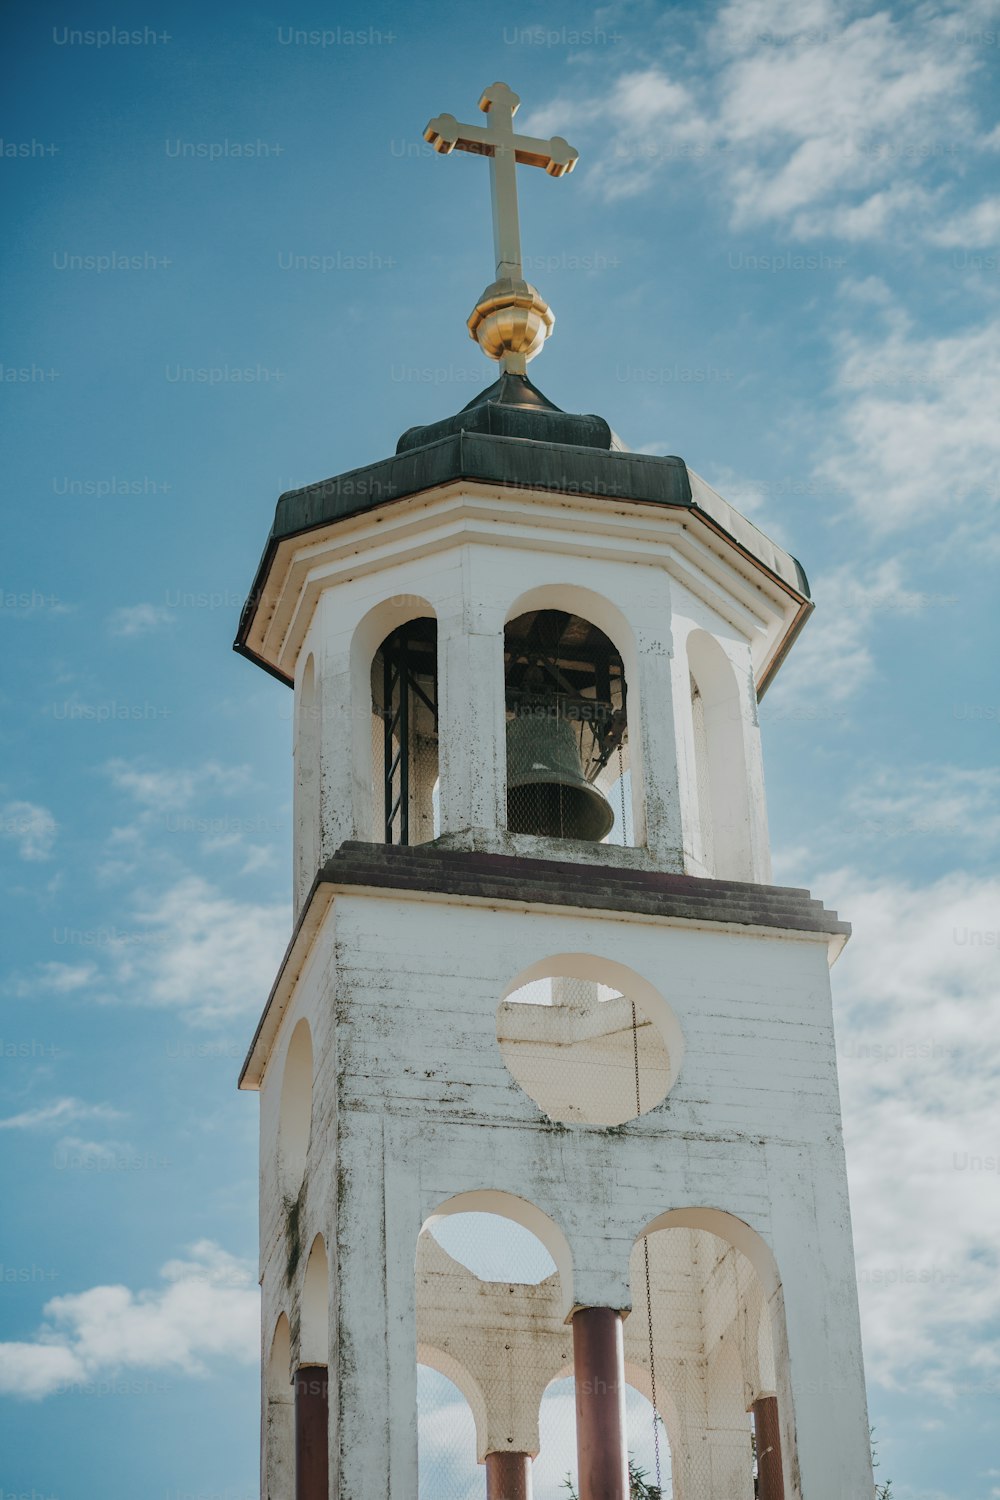 十字架が上にある白い教会の鐘楼